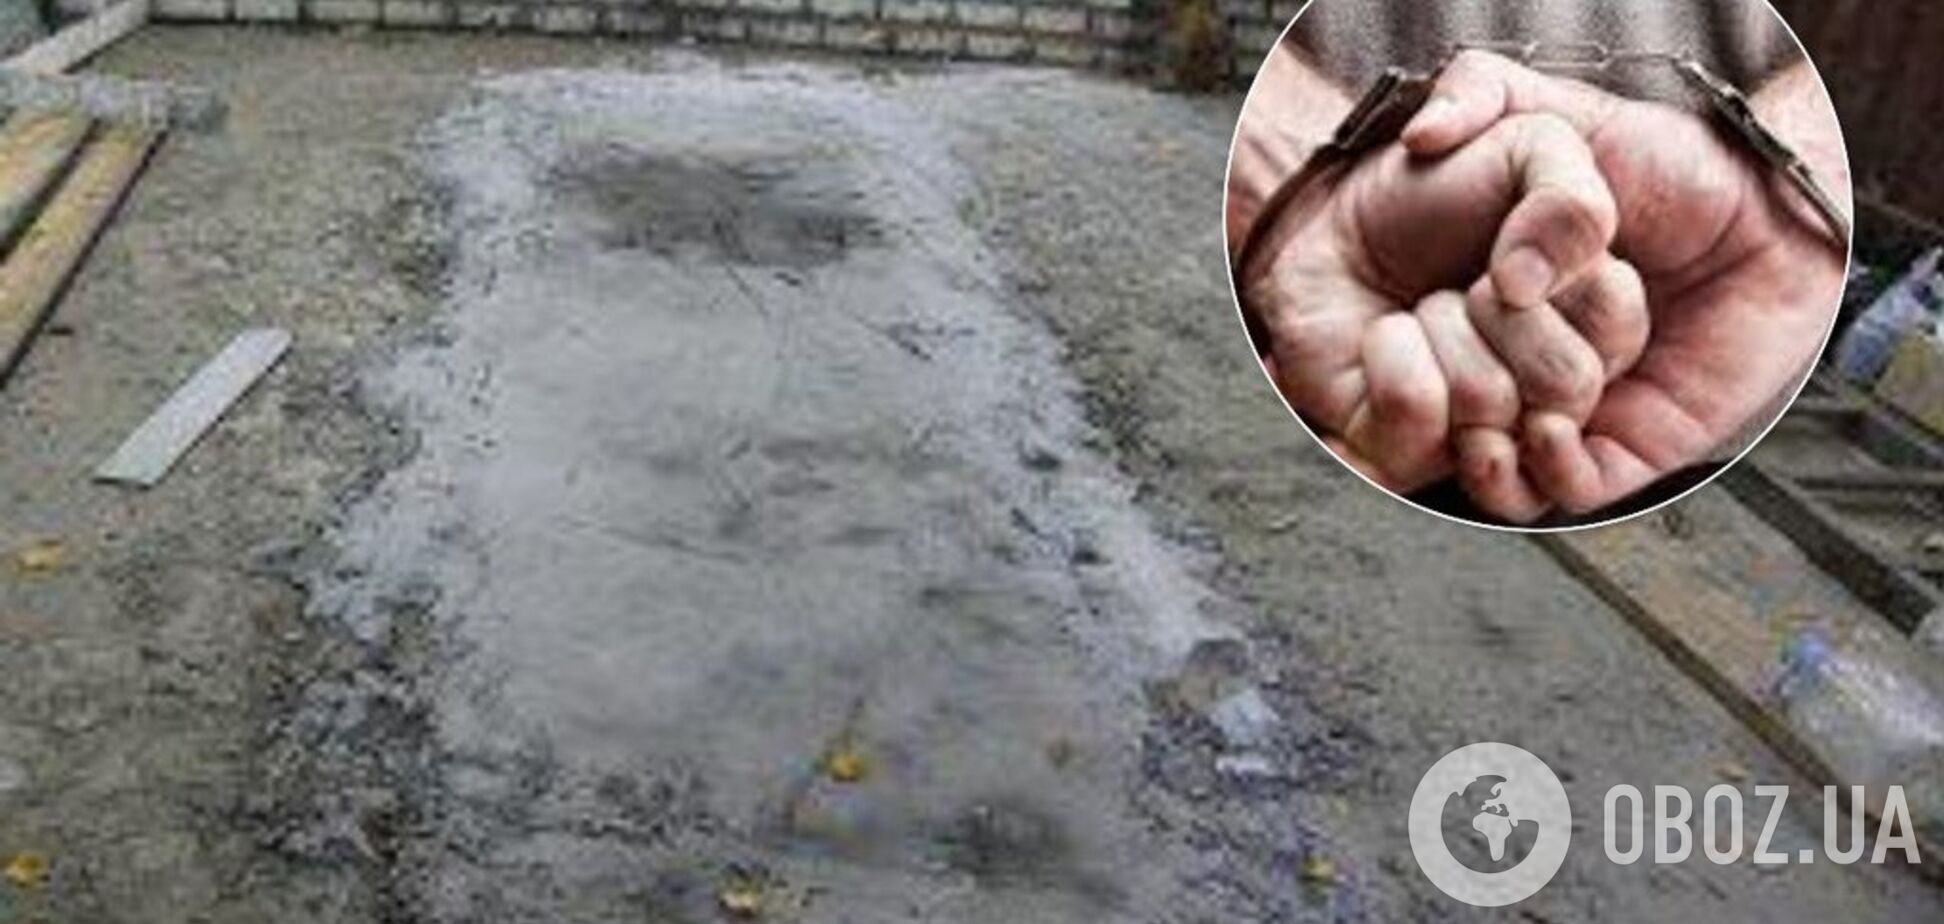 Закатали тело в бетон: в России произошло жуткое убийство